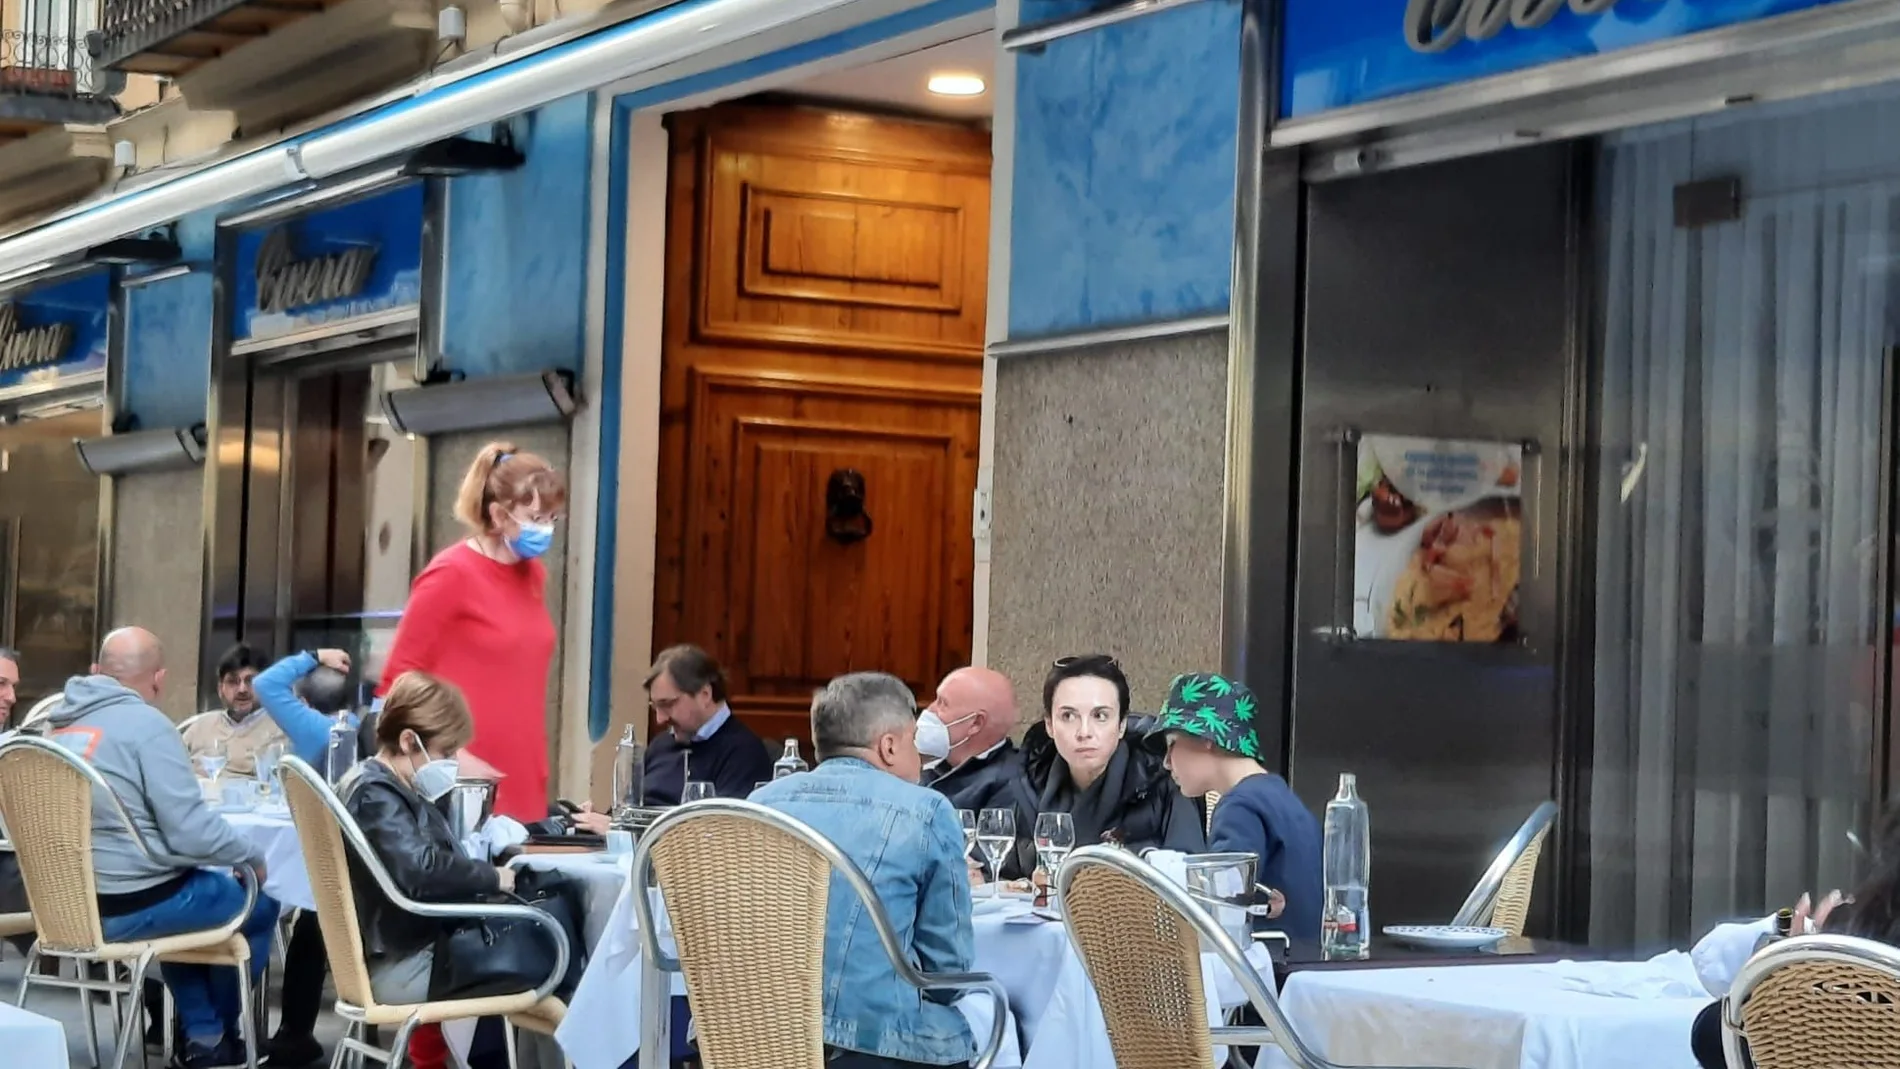 Por fin no habrá que ser un zahorí gastrónomo para encontrar un restaurante abierto para a la hora de cenar en la Comunitat Valenciana